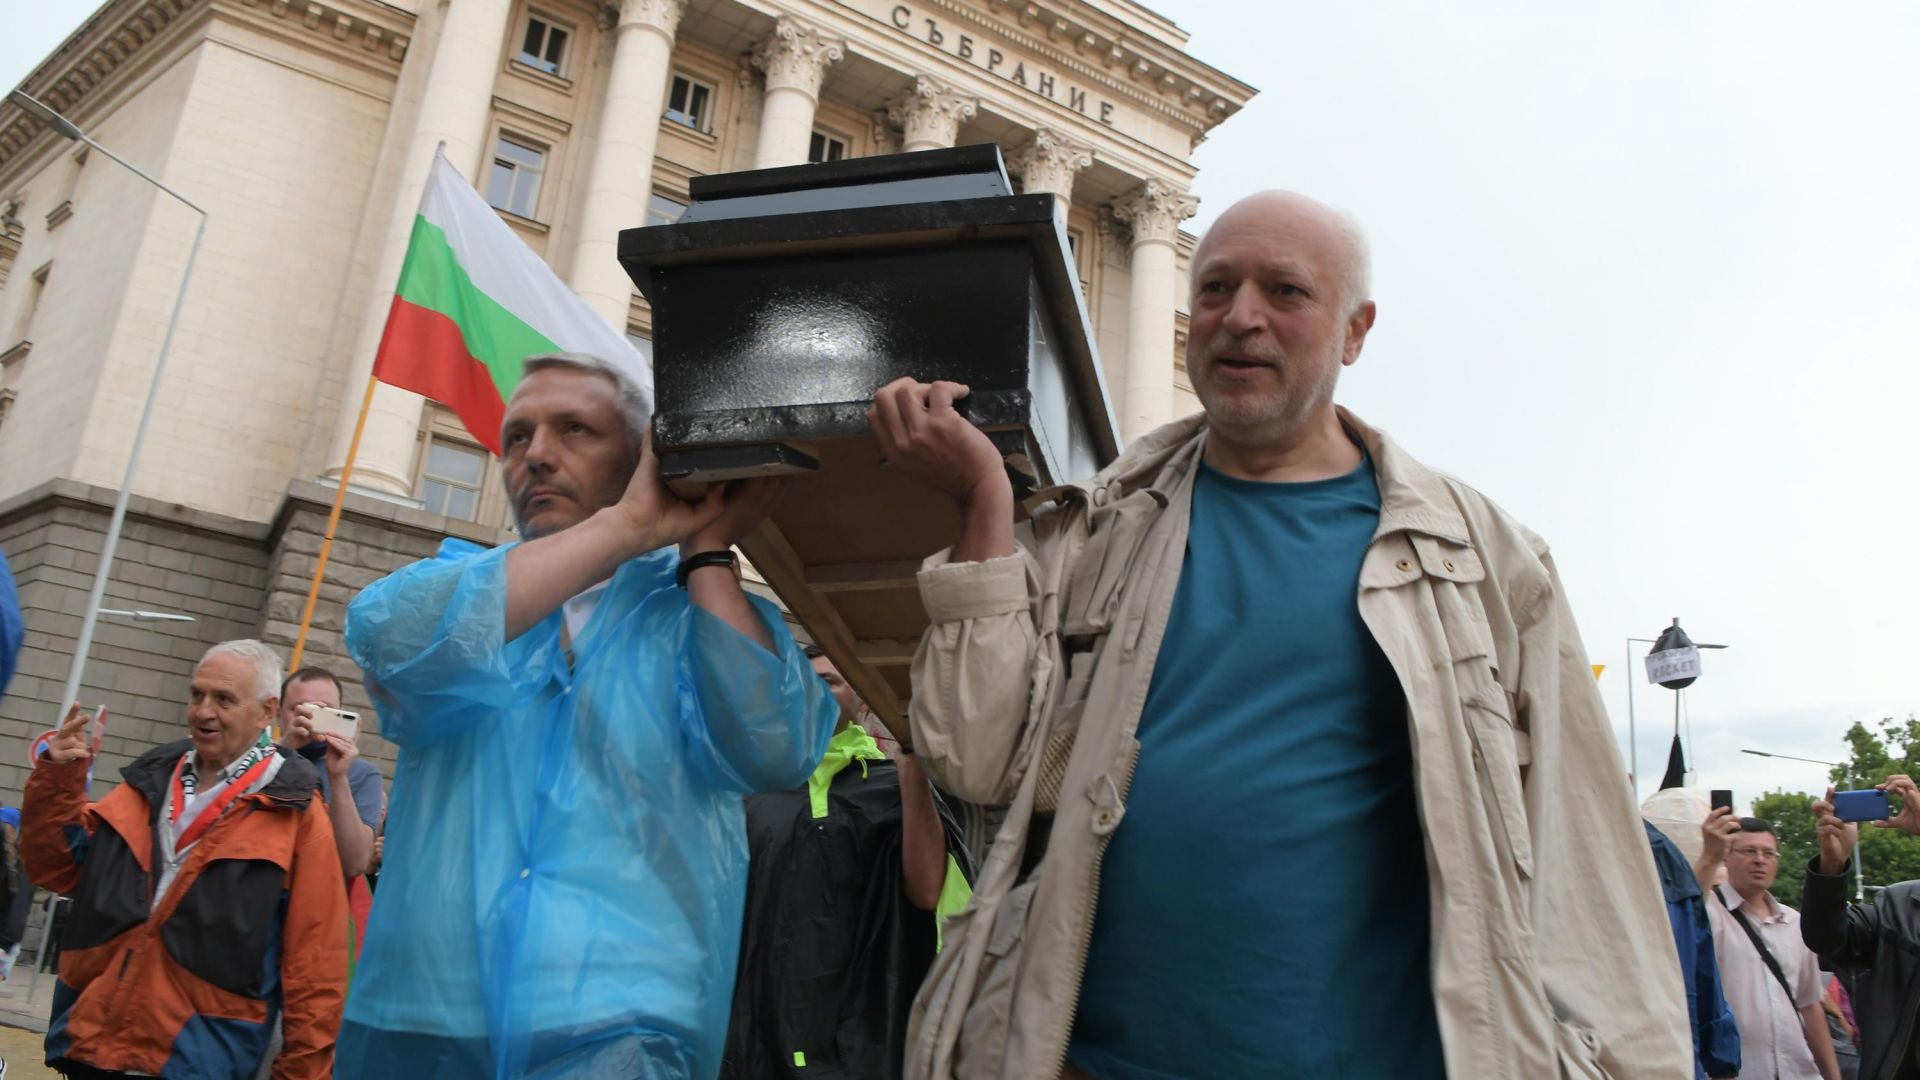 28 ден на протести: Тикви и ковчег с кръст с надпис "Борисовата диктатура" (снимки)